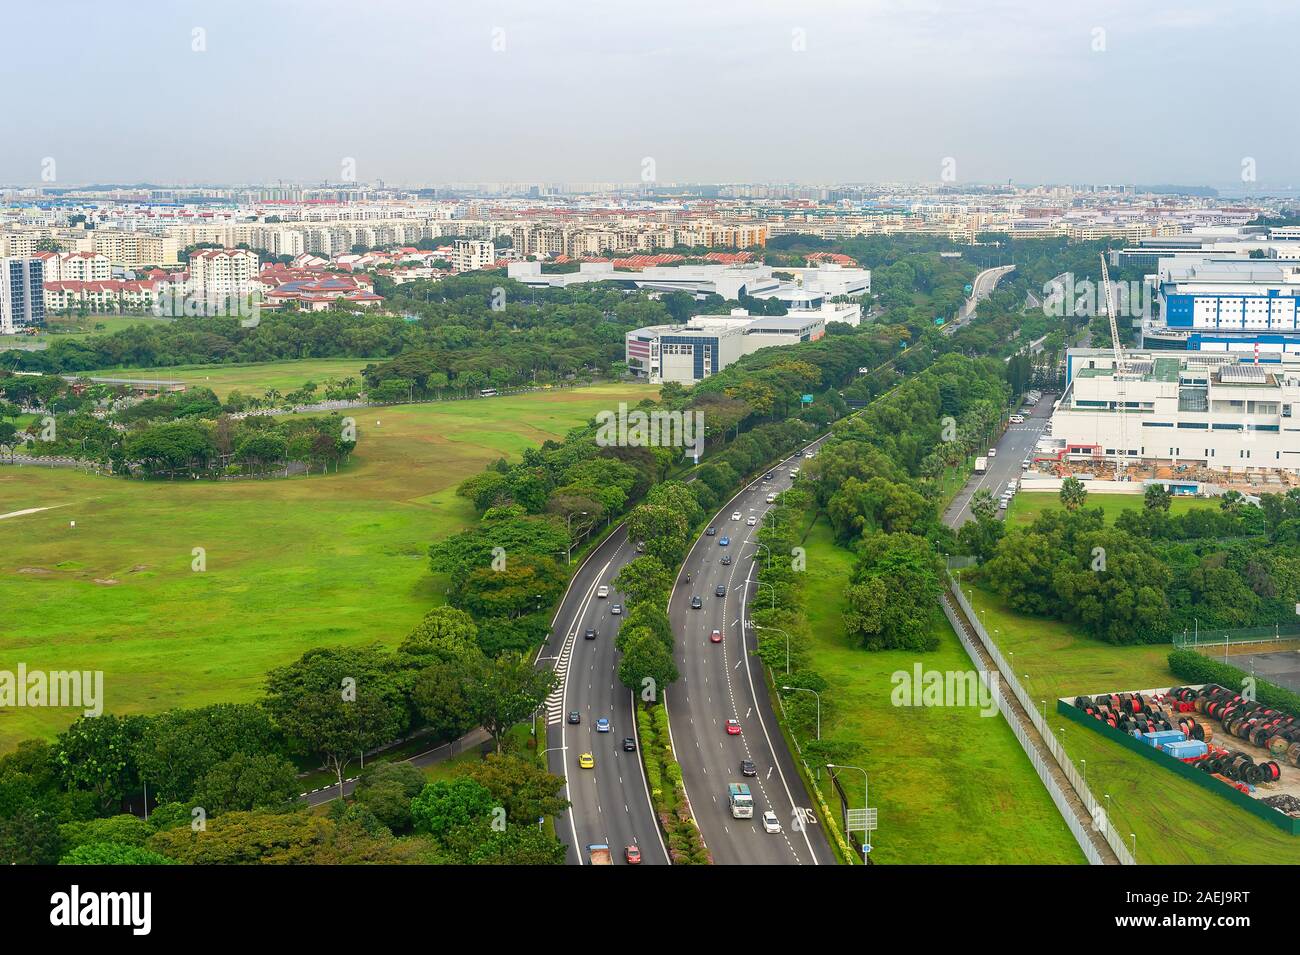 Luftaufnahme von Singapur mit PKW-Verkehr auf der Autobahn, grüne Landschaft mit modernen Stadtbild im Hintergrund Stockfoto